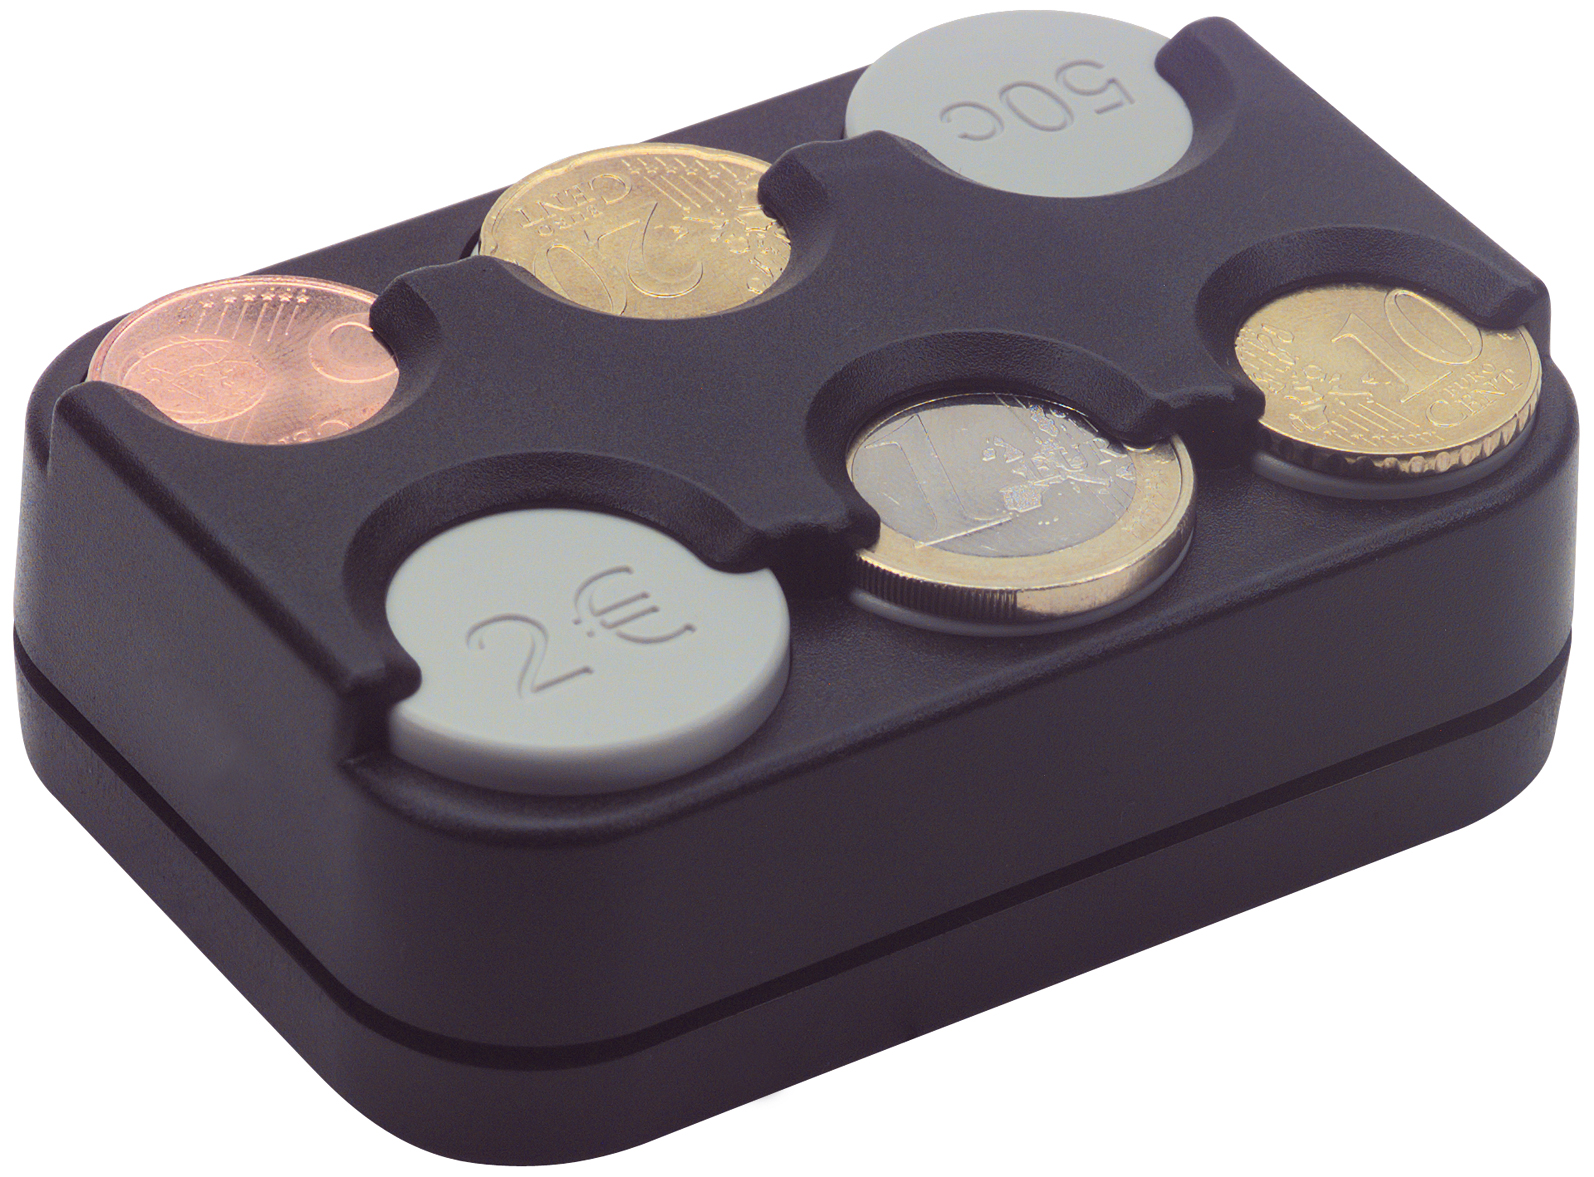 Lustig Euro Münzspender Box Autowechsler Kinder Geldbörse Plastik Geldbörse  Organizer Münzen Taschen Aufbewahrung